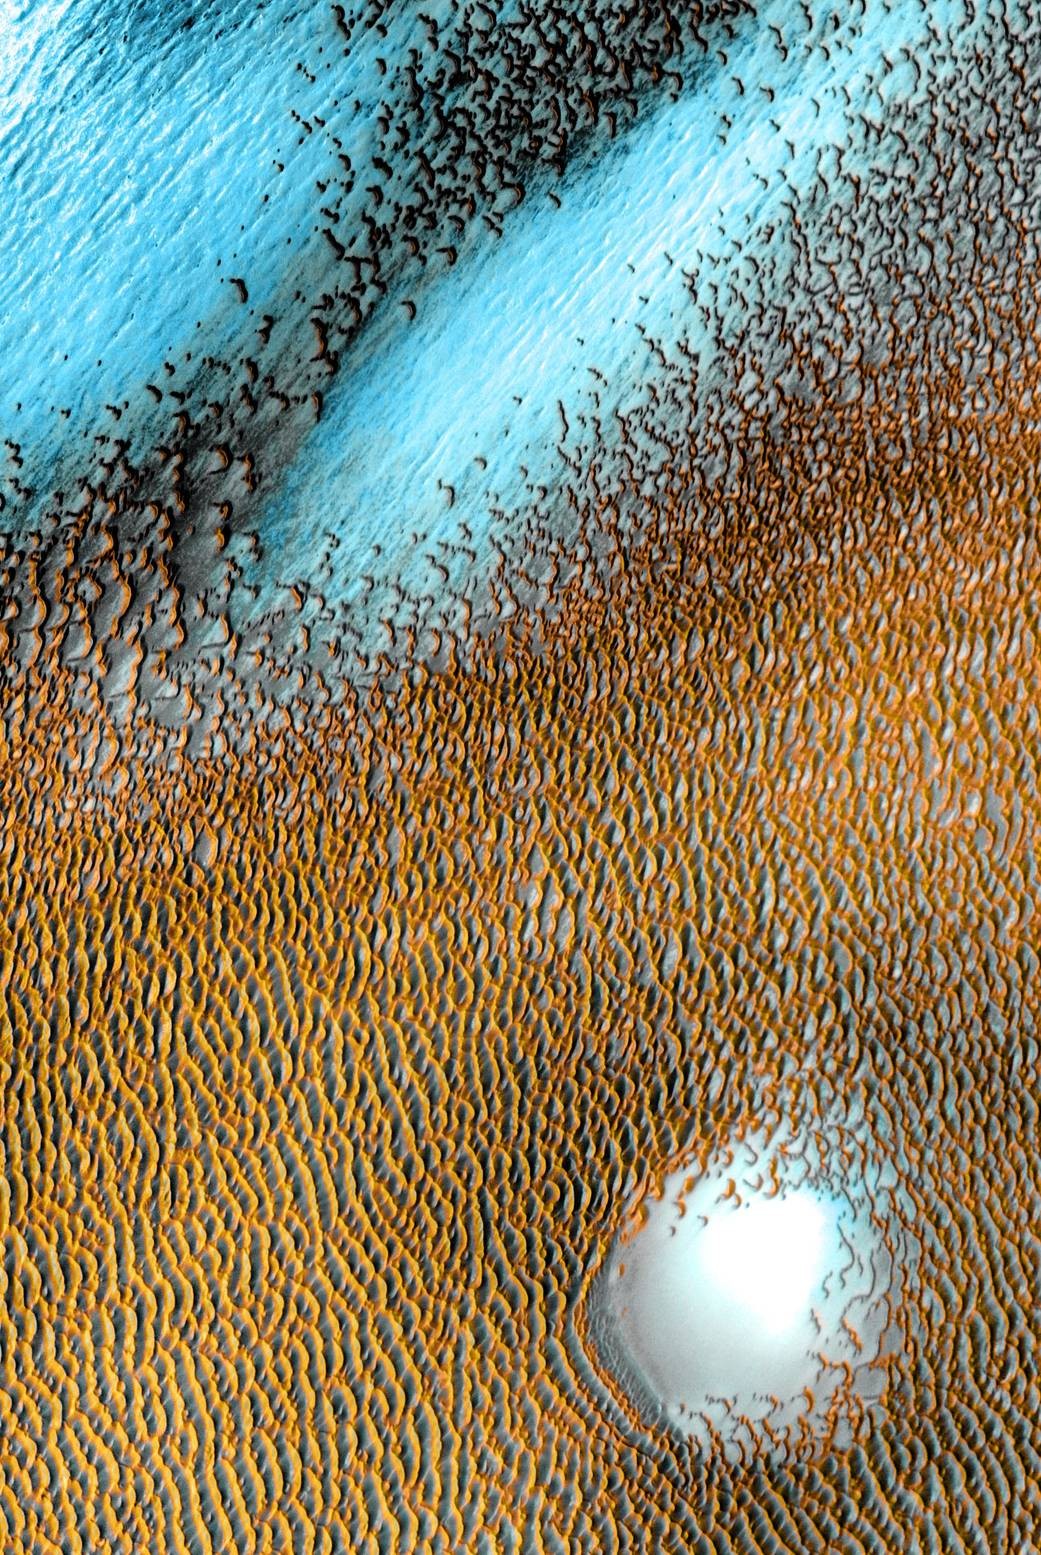 Foto que salta aos olhos por seu azul marcante é, na verdade, resultado de uma combinação de imagens captadas entre dezembro de 2002 e novembro de 2004 pelo Sistema de Imagem de Emissão Térmica (THEMIS), equipado no orbitador do Mars Odyssey (Foto: NASA/JPL-Caltech/ASU)